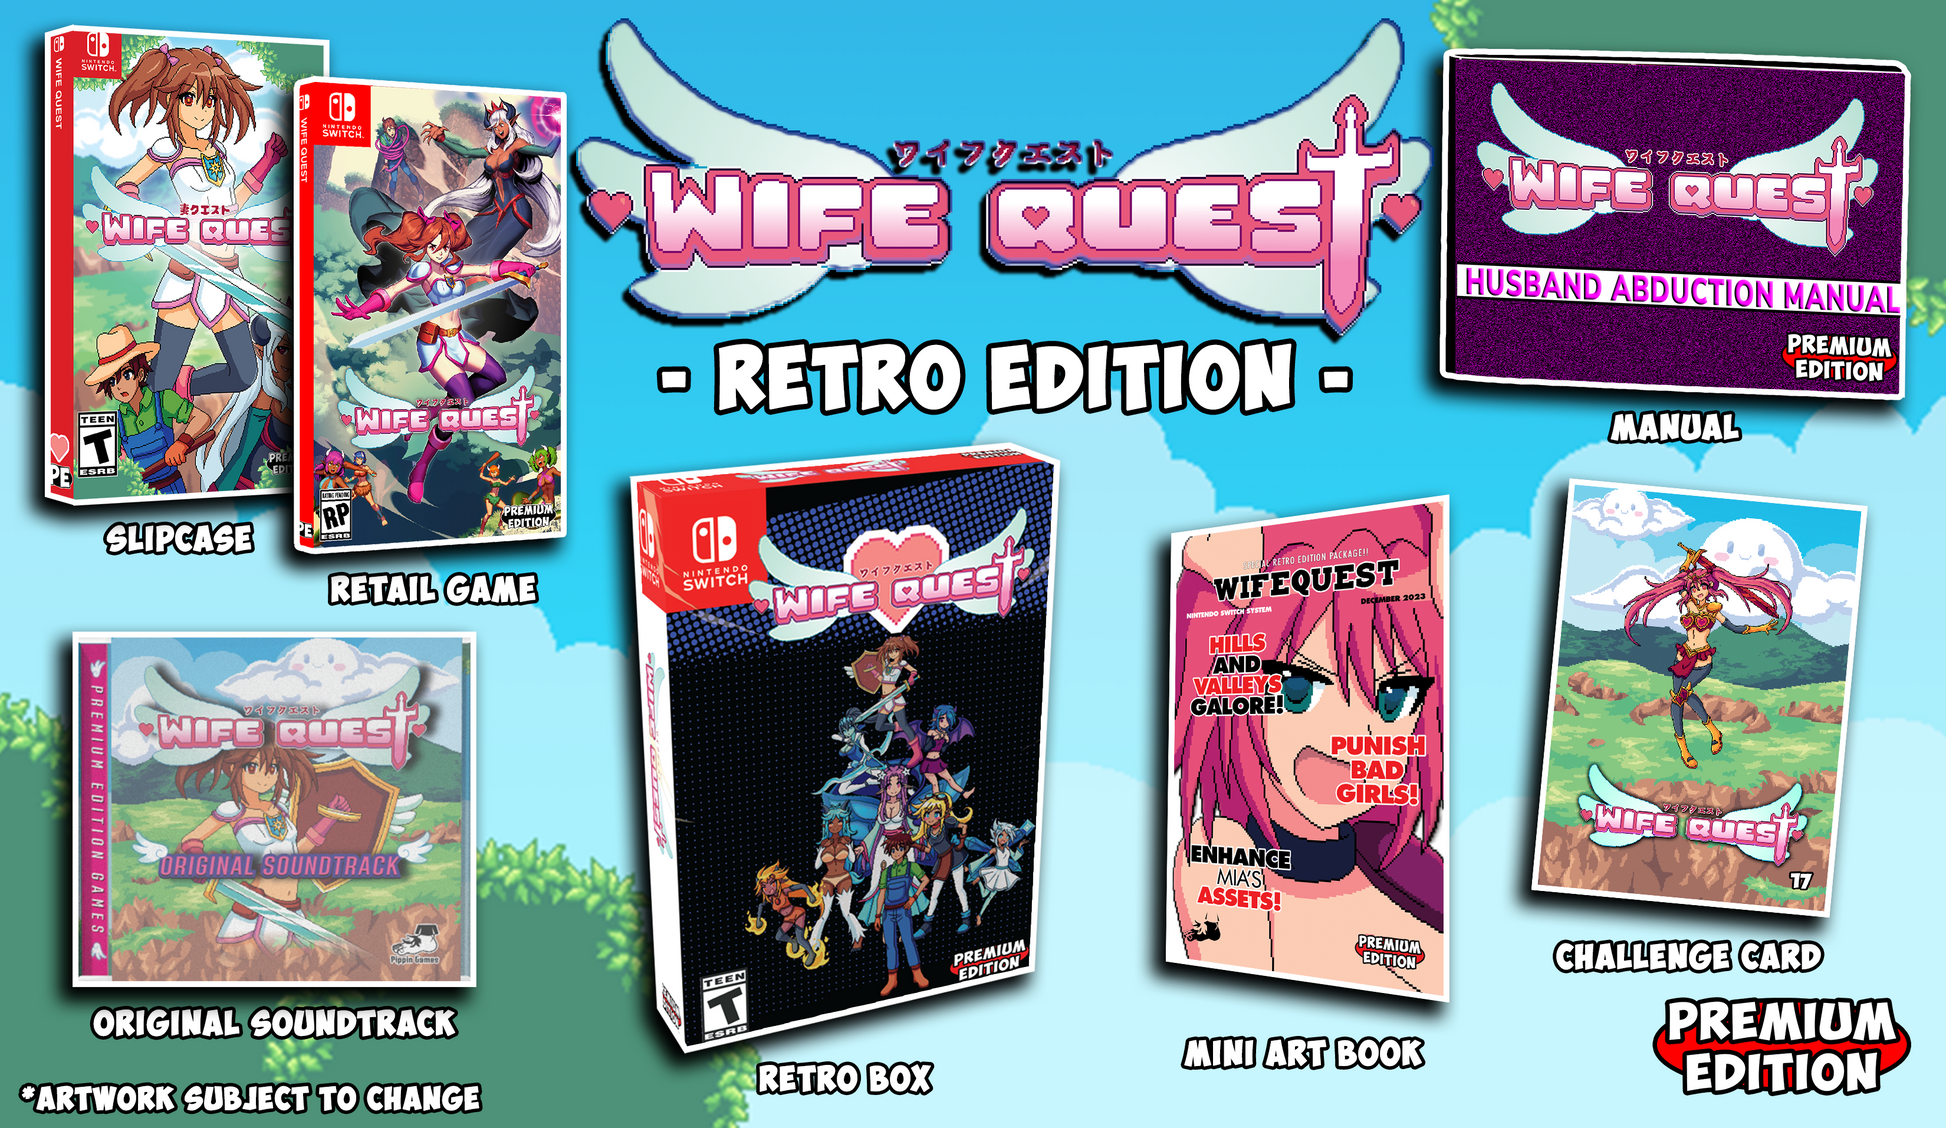 Wife quest. Супер квест книга-игра. Андроид game Brenda Quest - Retro platform.